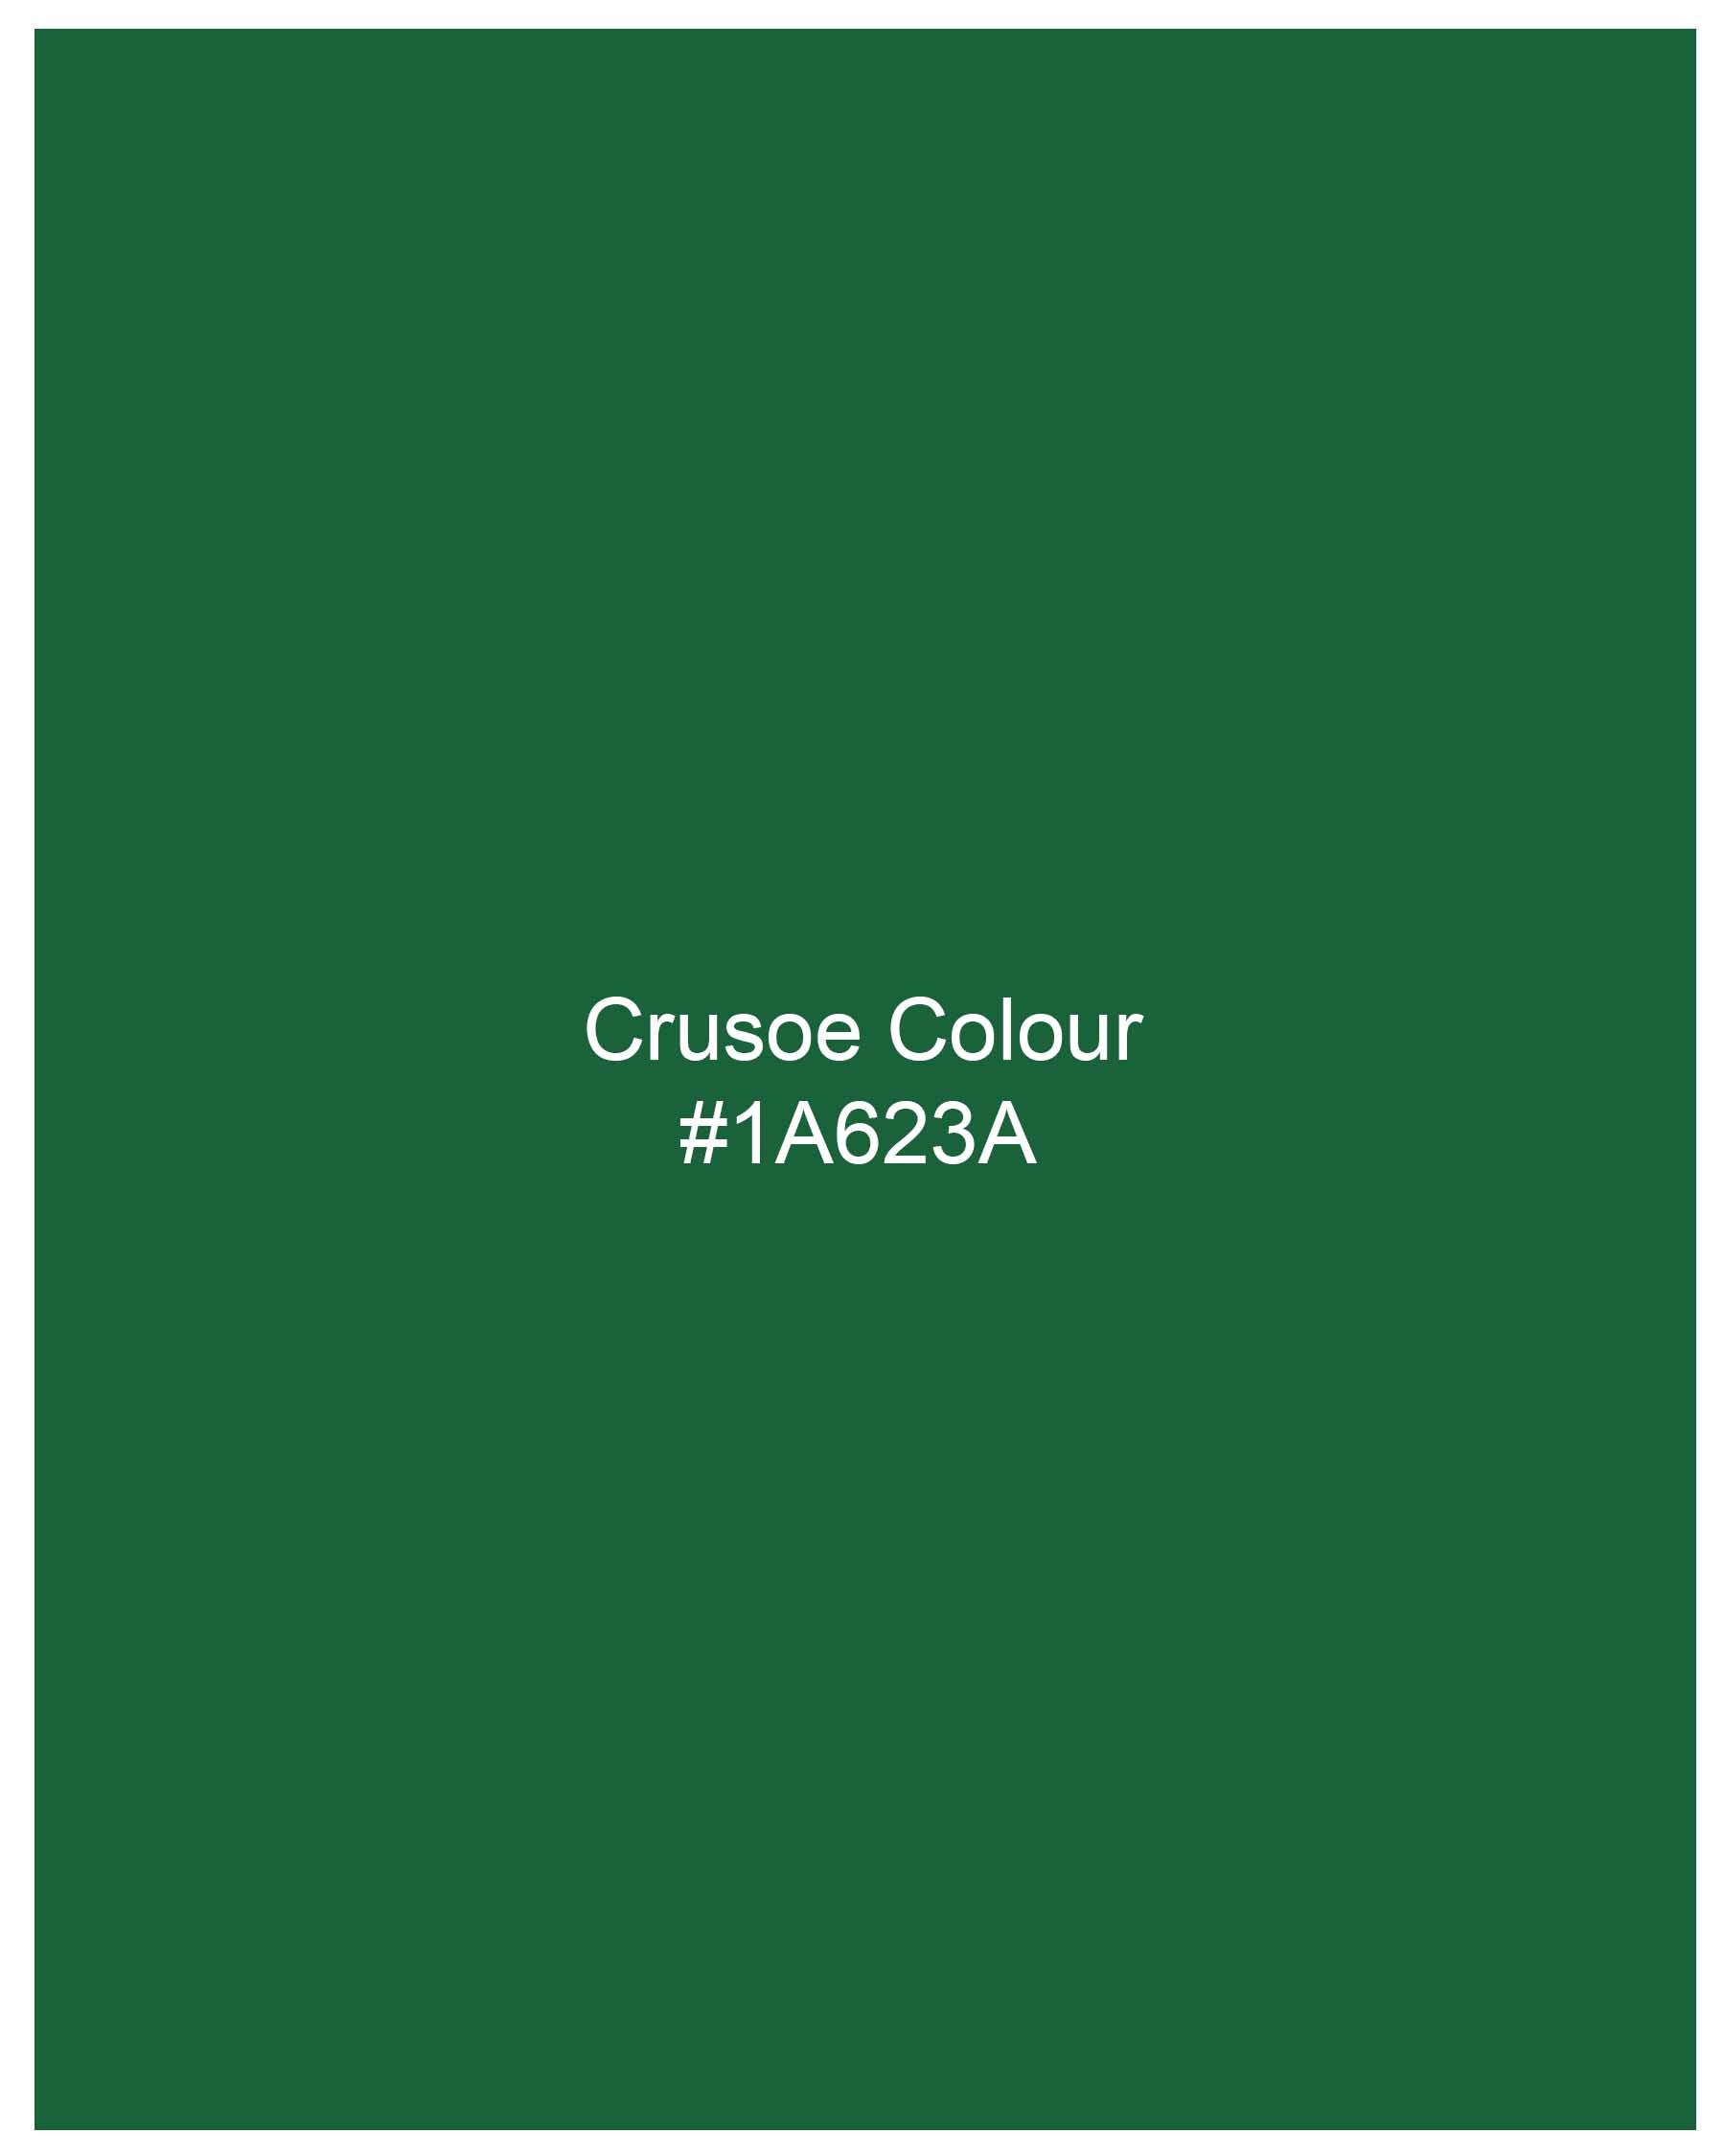 Crusoe Green Luxurious Linen Shirt 7991-M-38,7991-M-H-38,7991-M-39,7991-M-H-39,7991-M-40,7991-M-H-40,7991-M-42,7991-M-H-42,7991-M-44,7991-M-H-44,7991-M-46,7991-M-H-46,7991-M-48,7991-M-H-48,7991-M-50,7991-M-H-50,7991-M-52,7991-M-H-52